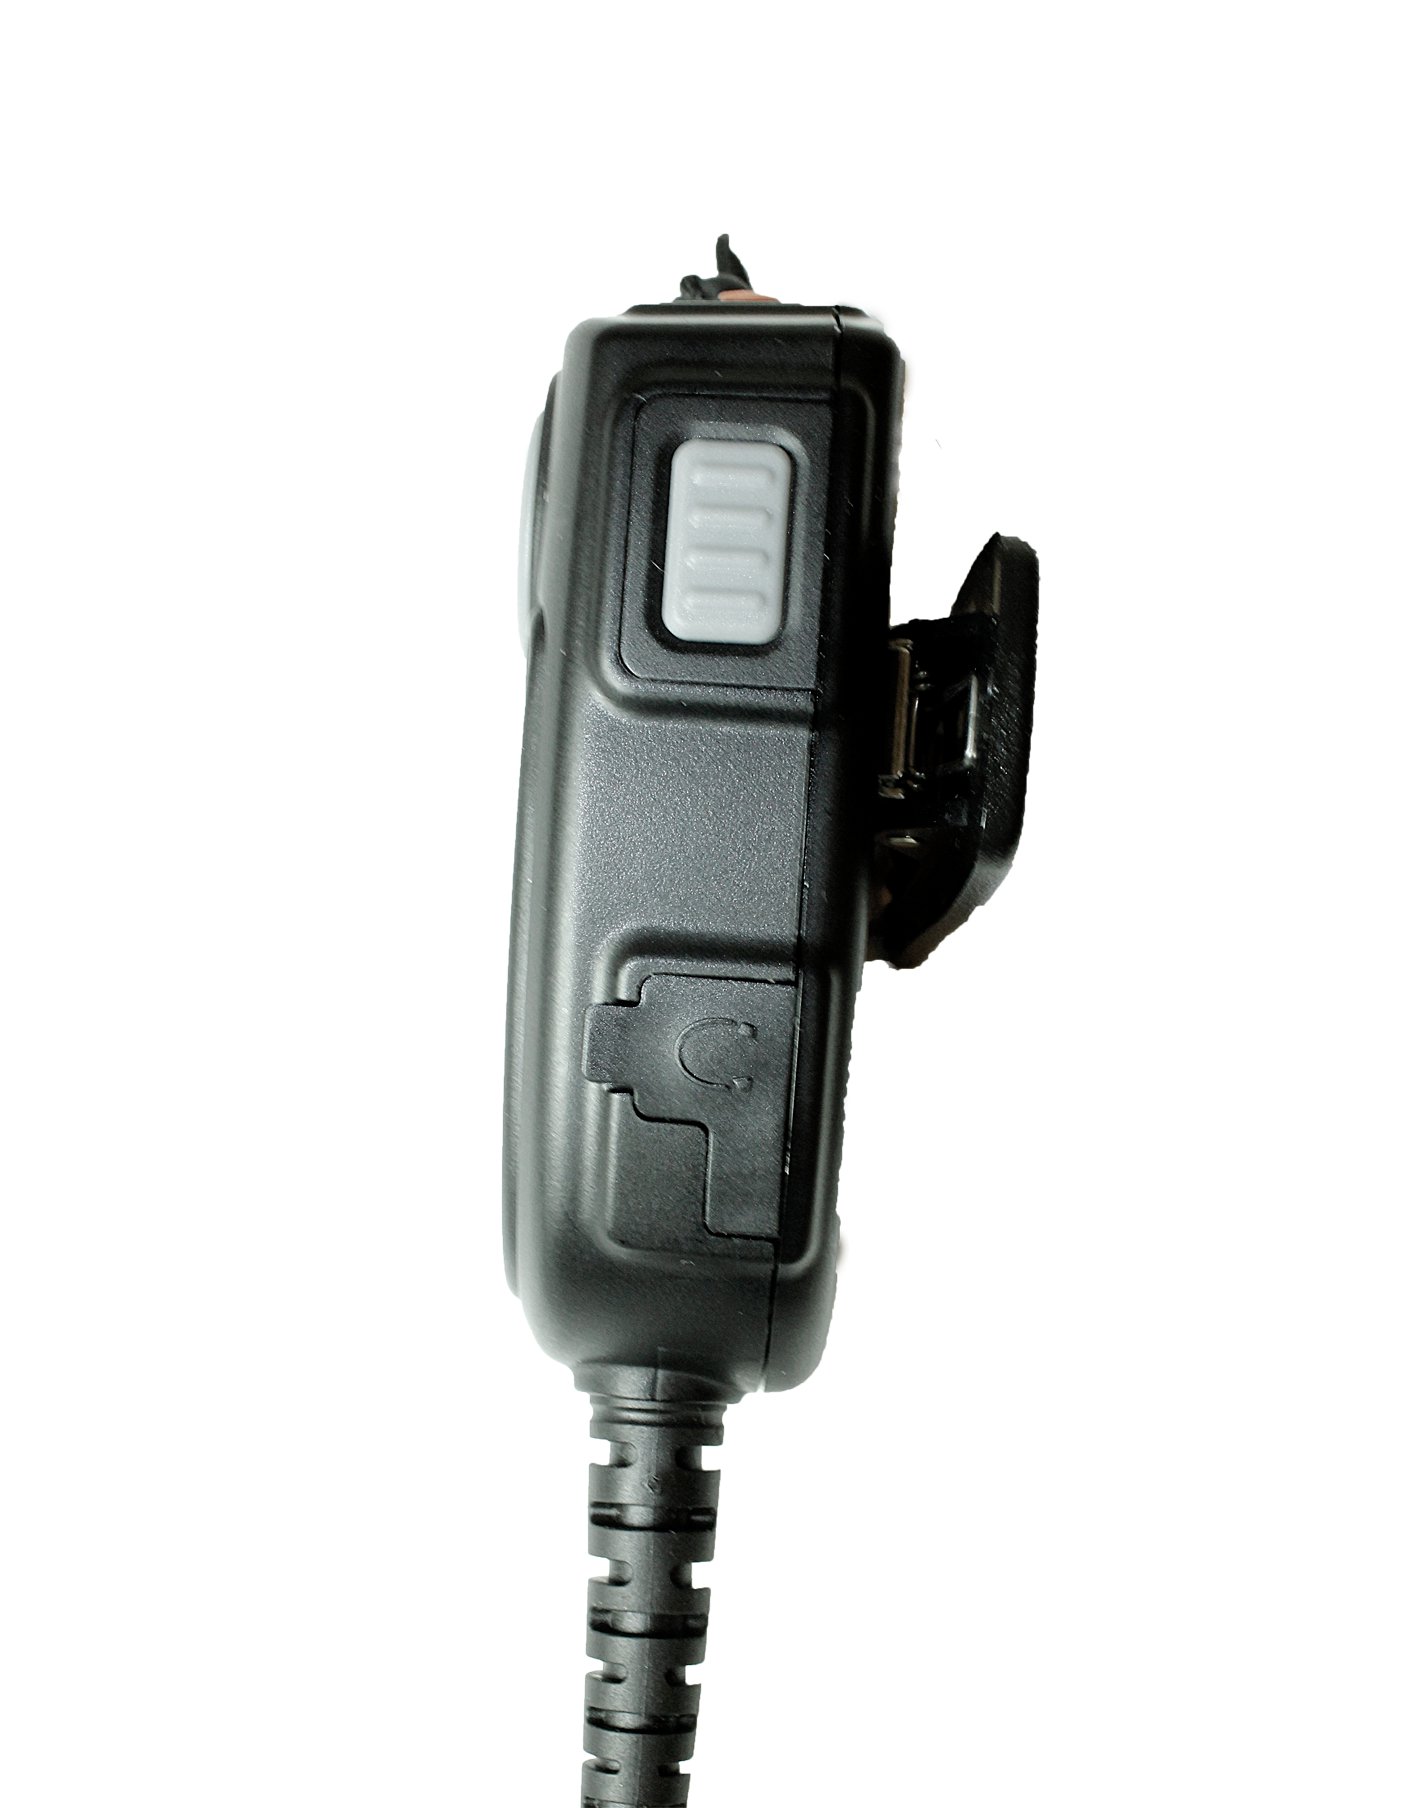 TITAN Lautsprechermikrofon MMW20 mit Nexus 02 und PTT-Modul passend für Sepura STP9000, SC20